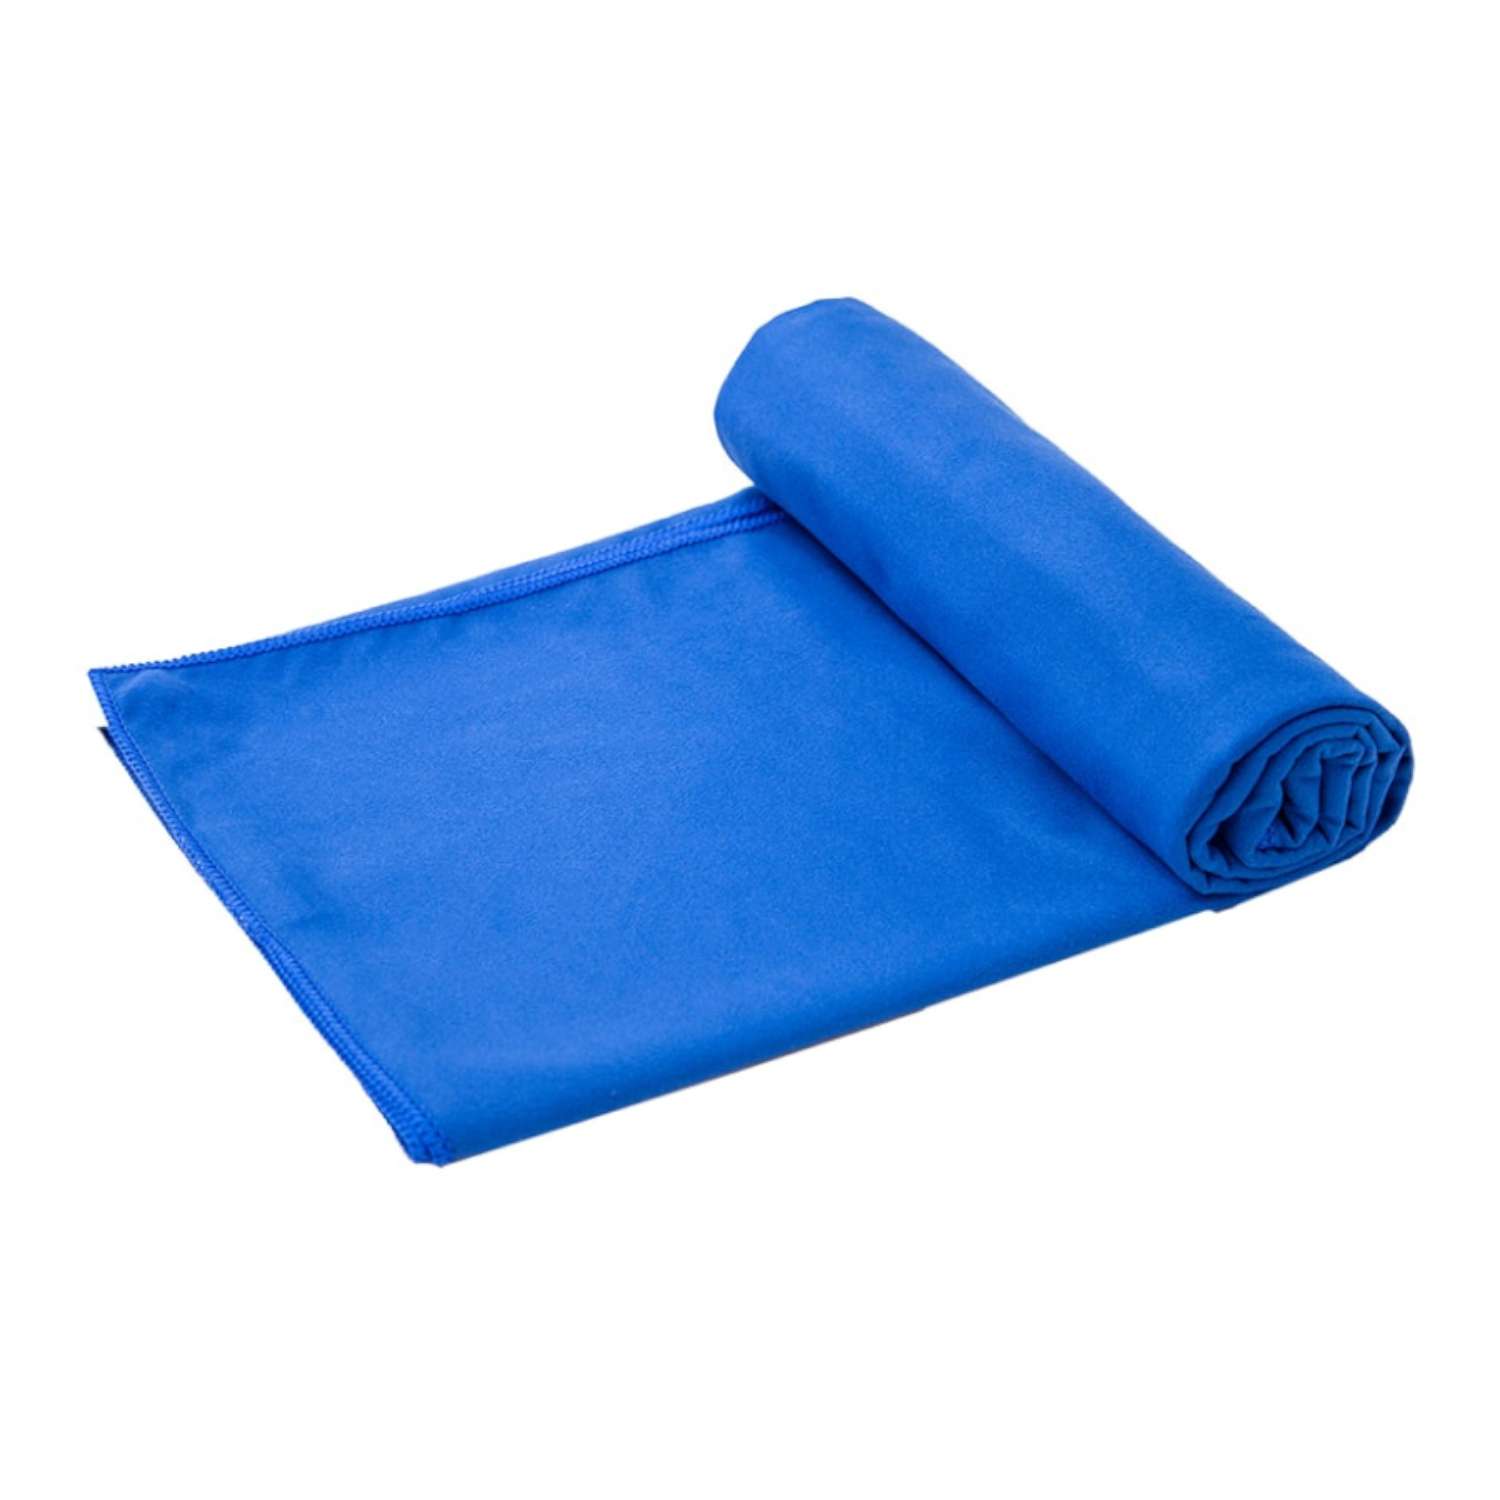 Полотенце спортивное Urbanfit синий размер 70х140 см - фото 1